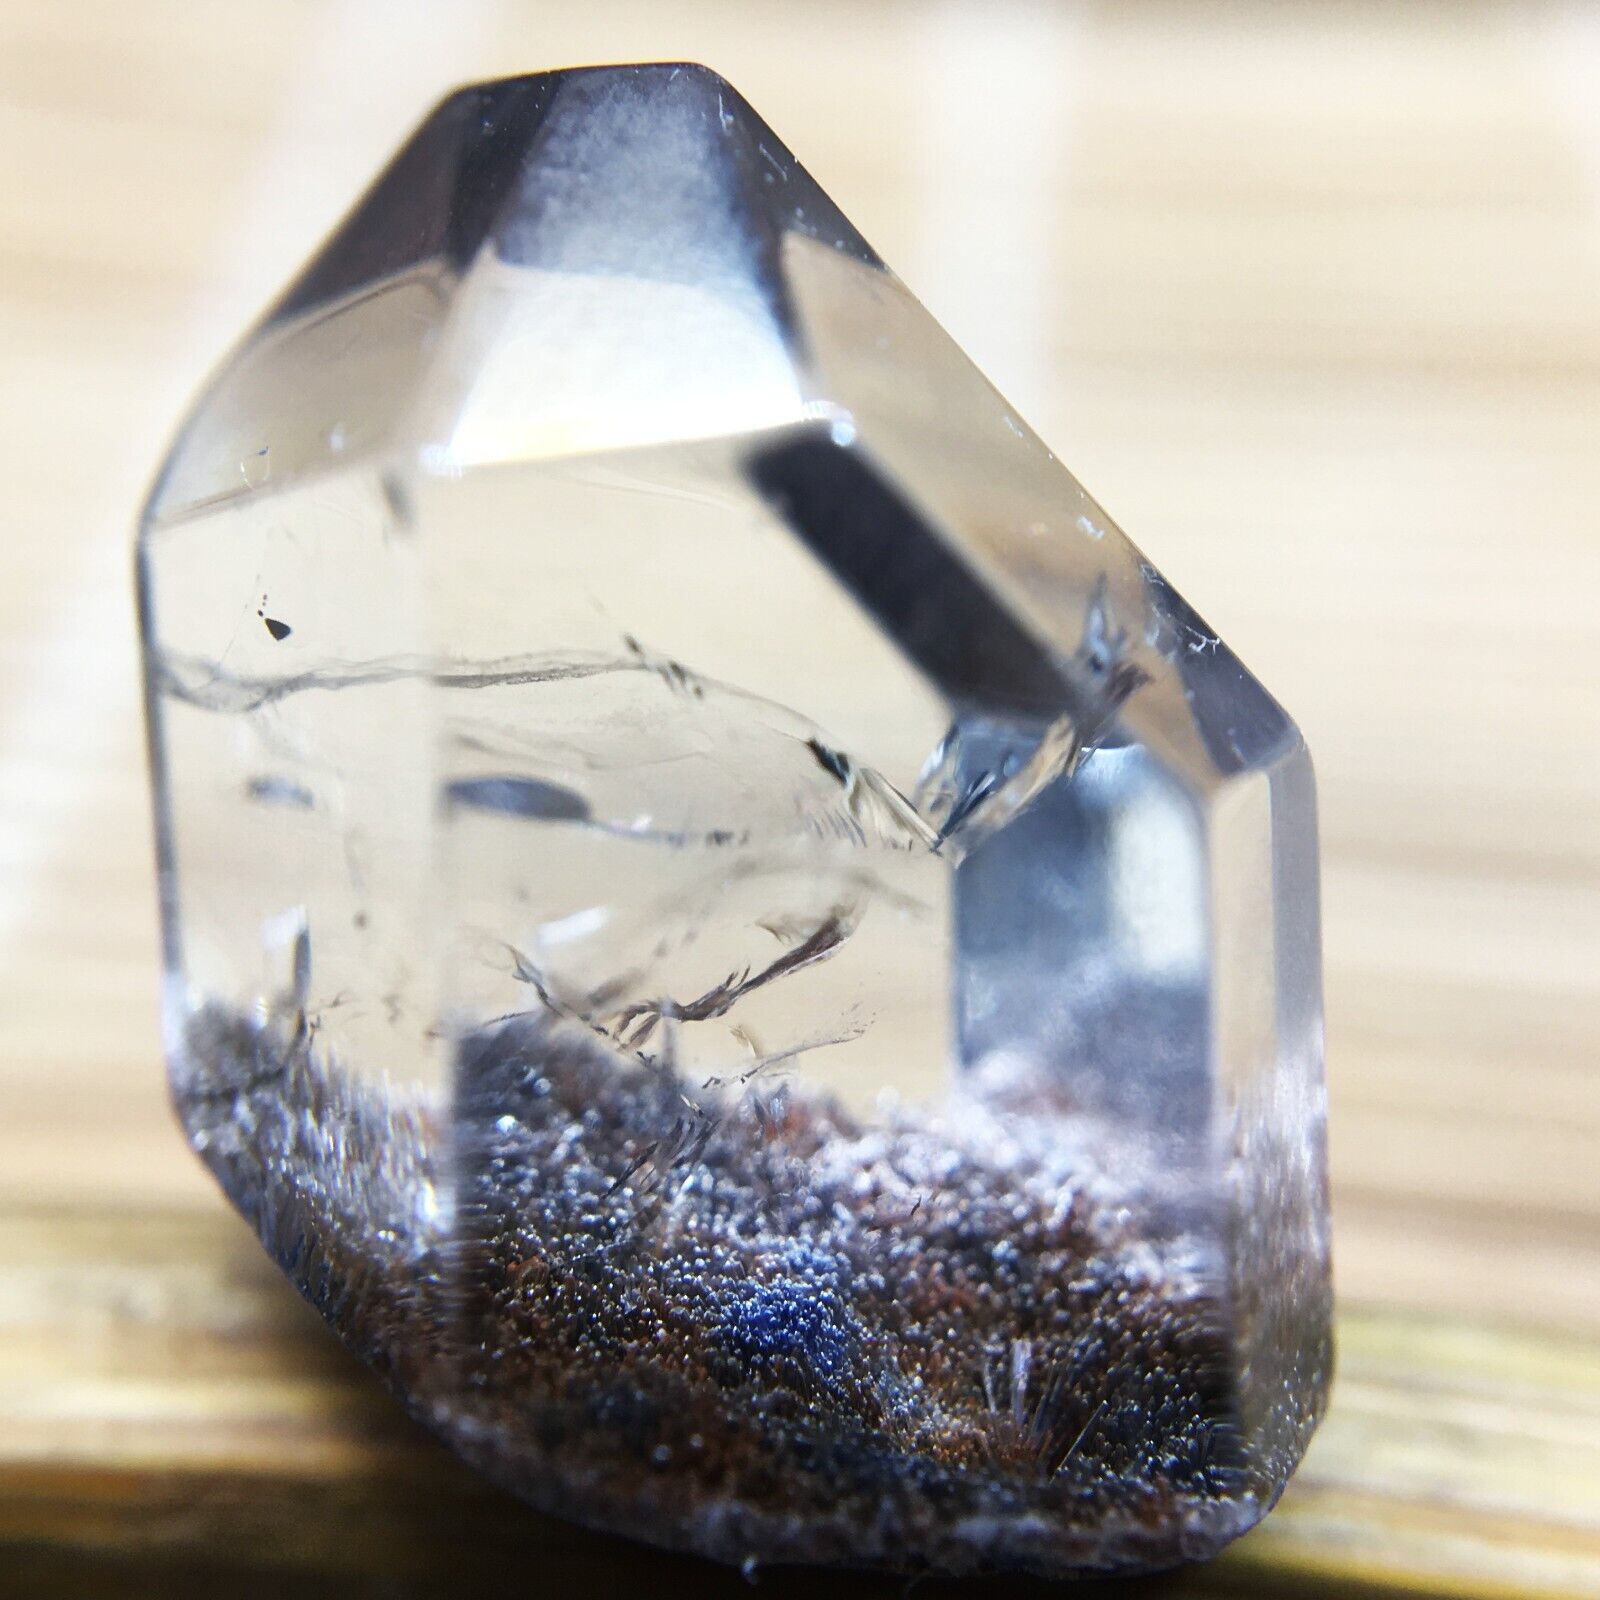 11.3Ct Very Rare NATURAL Beautiful Blue Dumortierite Quartz Crystal Specimen